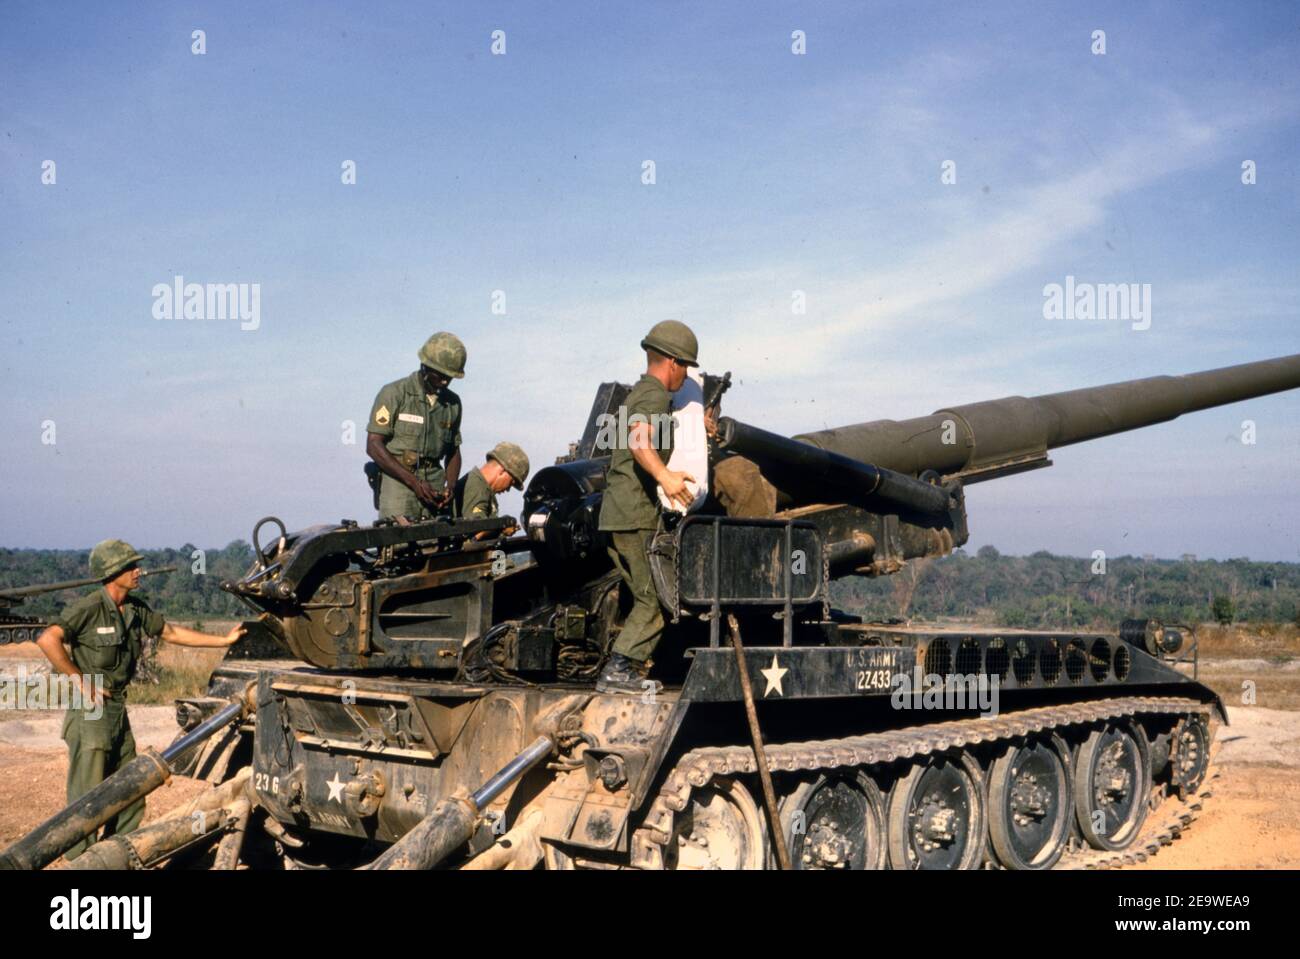 Etats-Unis Vietnam-Krieg armée américaine Selbstfahrgeschütz (Selbstfahrlafette) M107 175 mm - Guerre du Vietnam arme auto-propulsée M107 6.9 pouces de l'armée américaine Banque D'Images